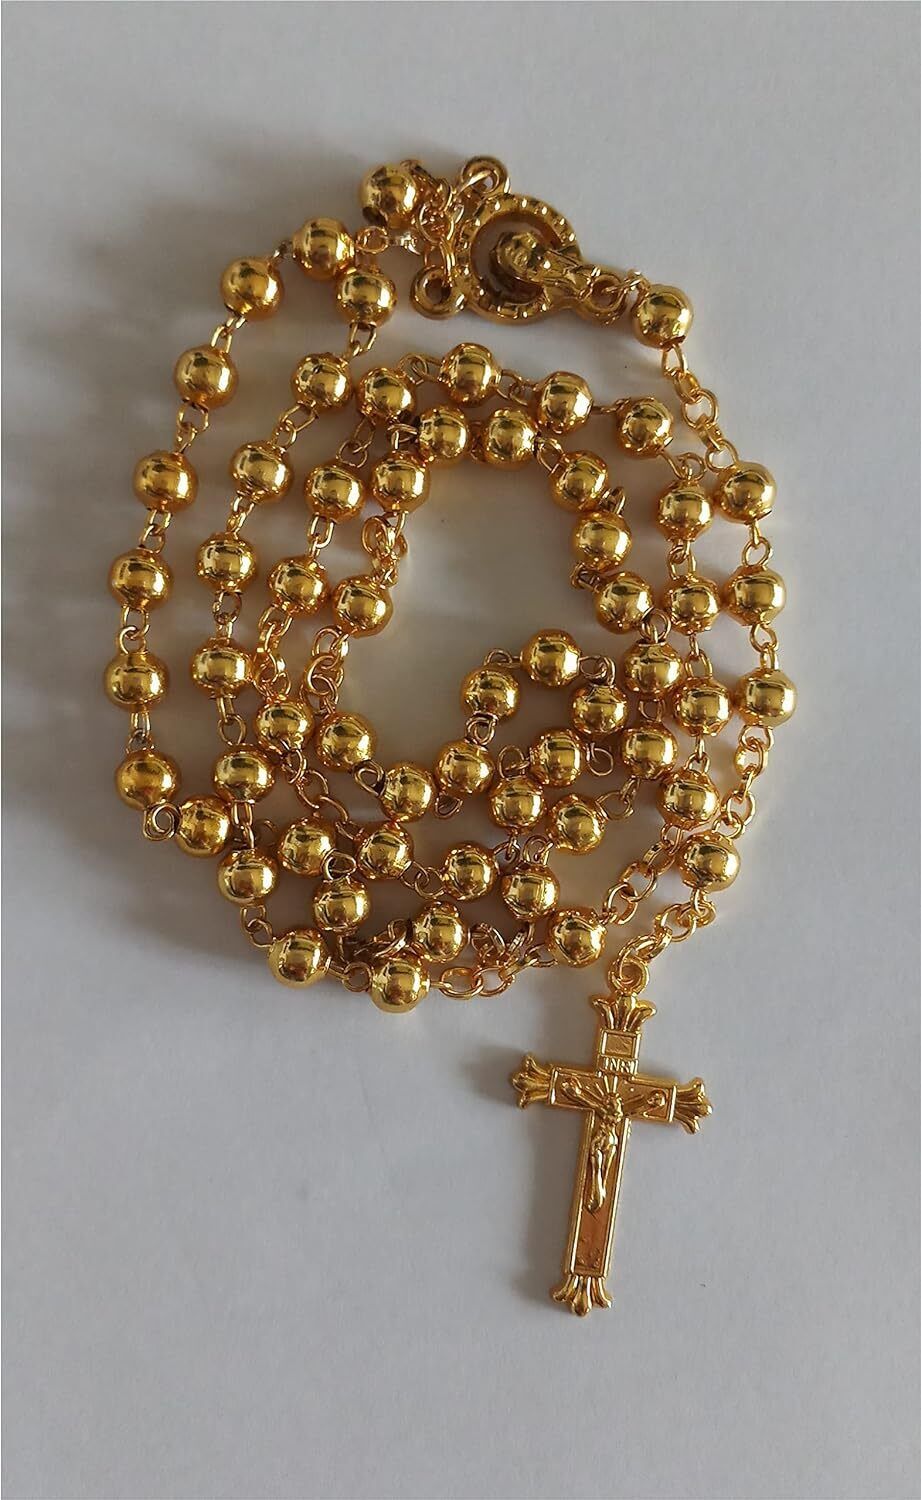 Golden Rosary for Praying | Catholic Prayer Rosary for Men & Women - 6mm beads